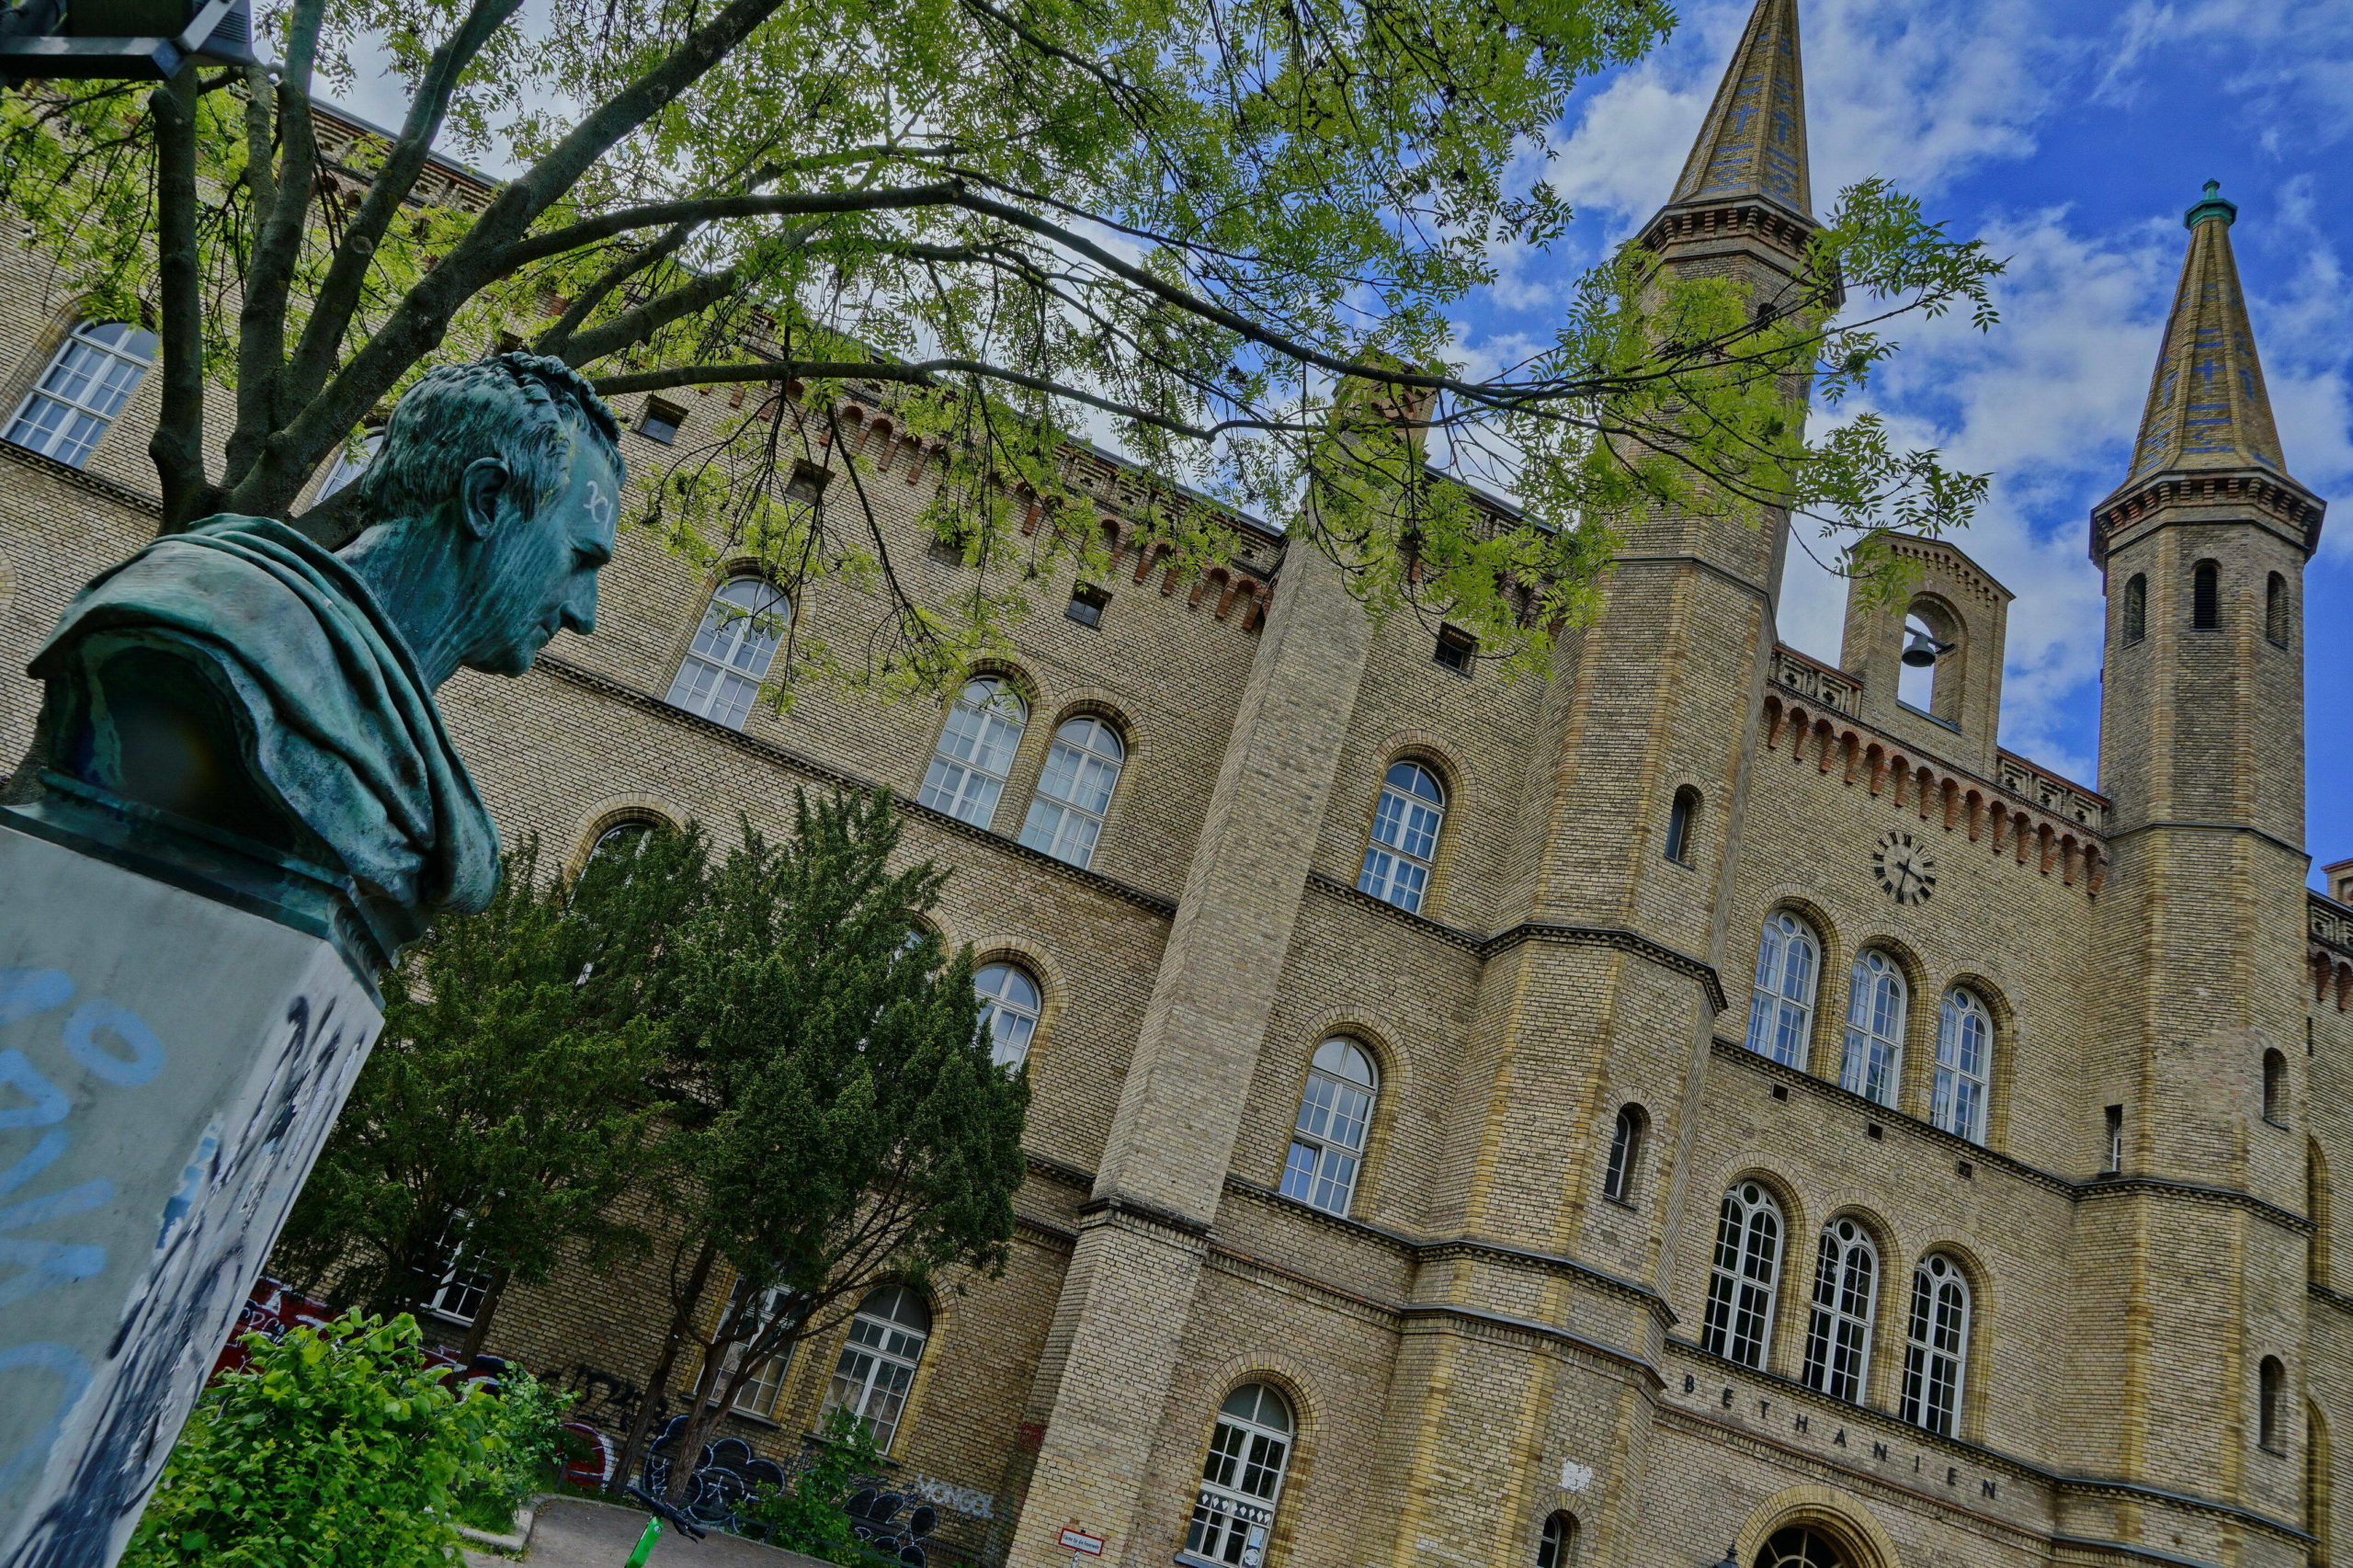 Das Künstlerhaus Bethanien am Mariannenplatz, ein Teil des historischen Gebäudes ist immer noch besetzt und um die Ecke steht das legendäre Rauch-Haus, das schon die Ton Steine Scherben besungen haben. Foto: Imago/POP-EYE/Christian Behring